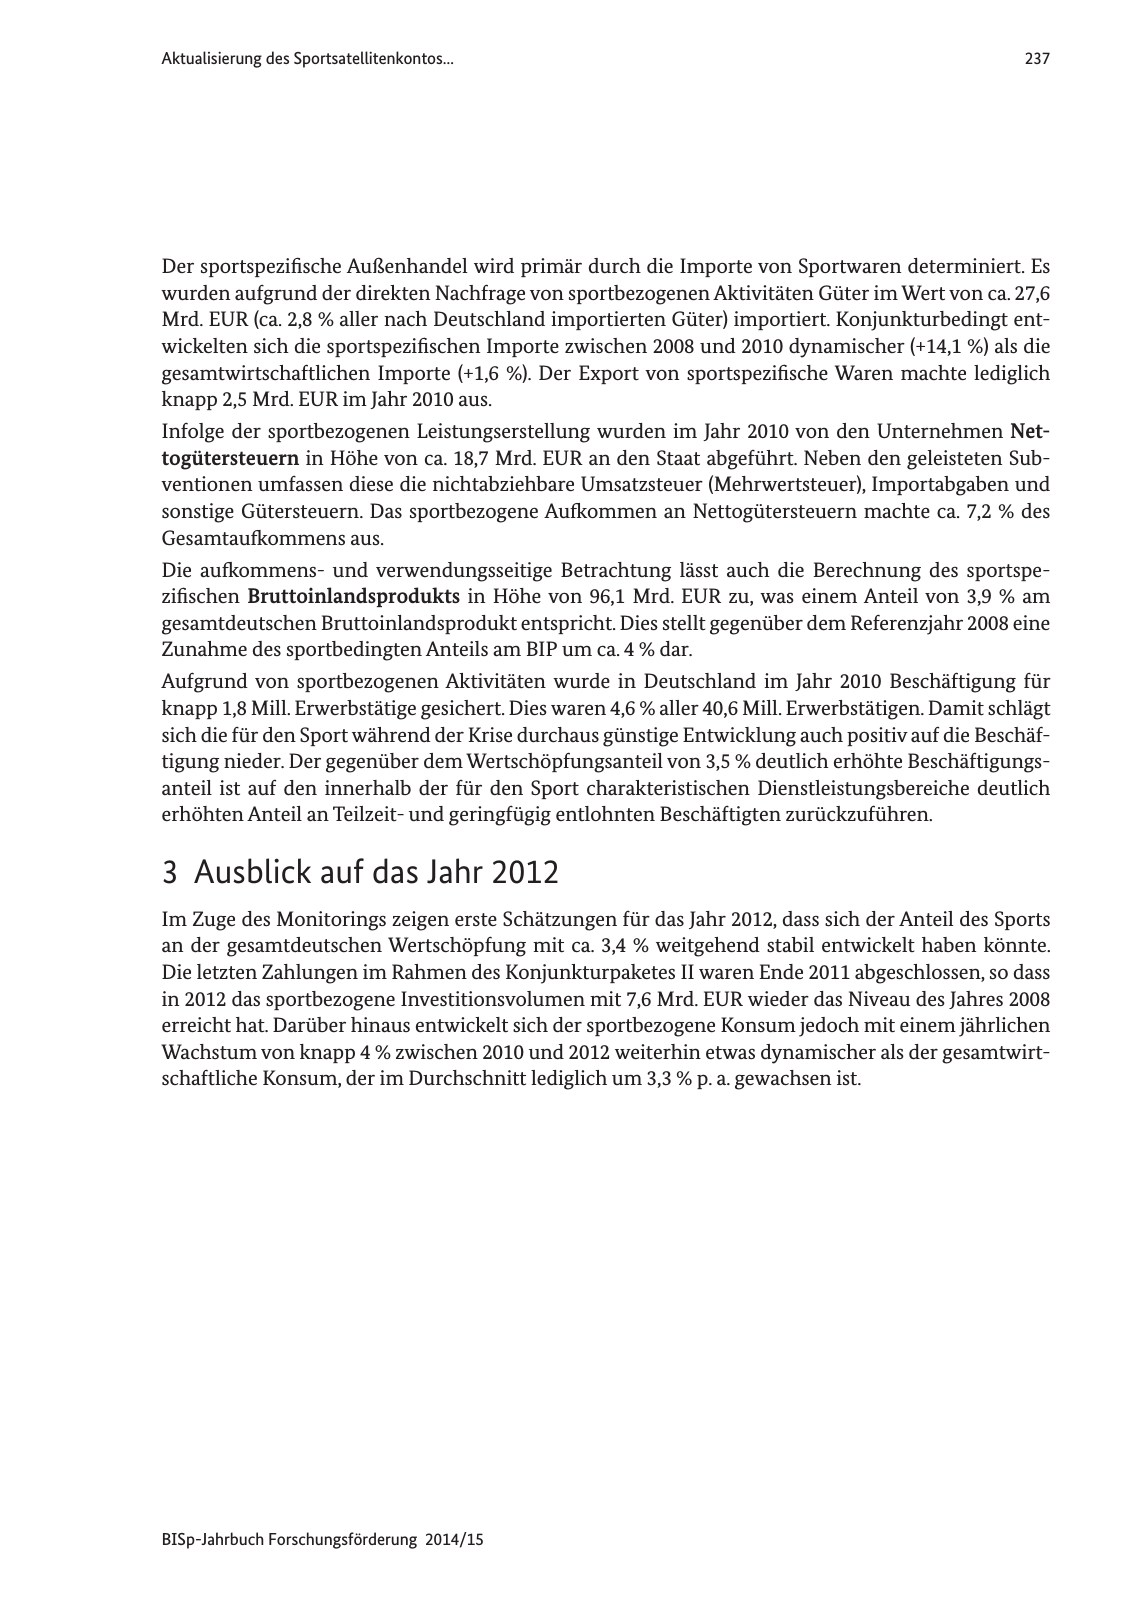 Vorschau Jahrbuch 2014/15 Seite 238